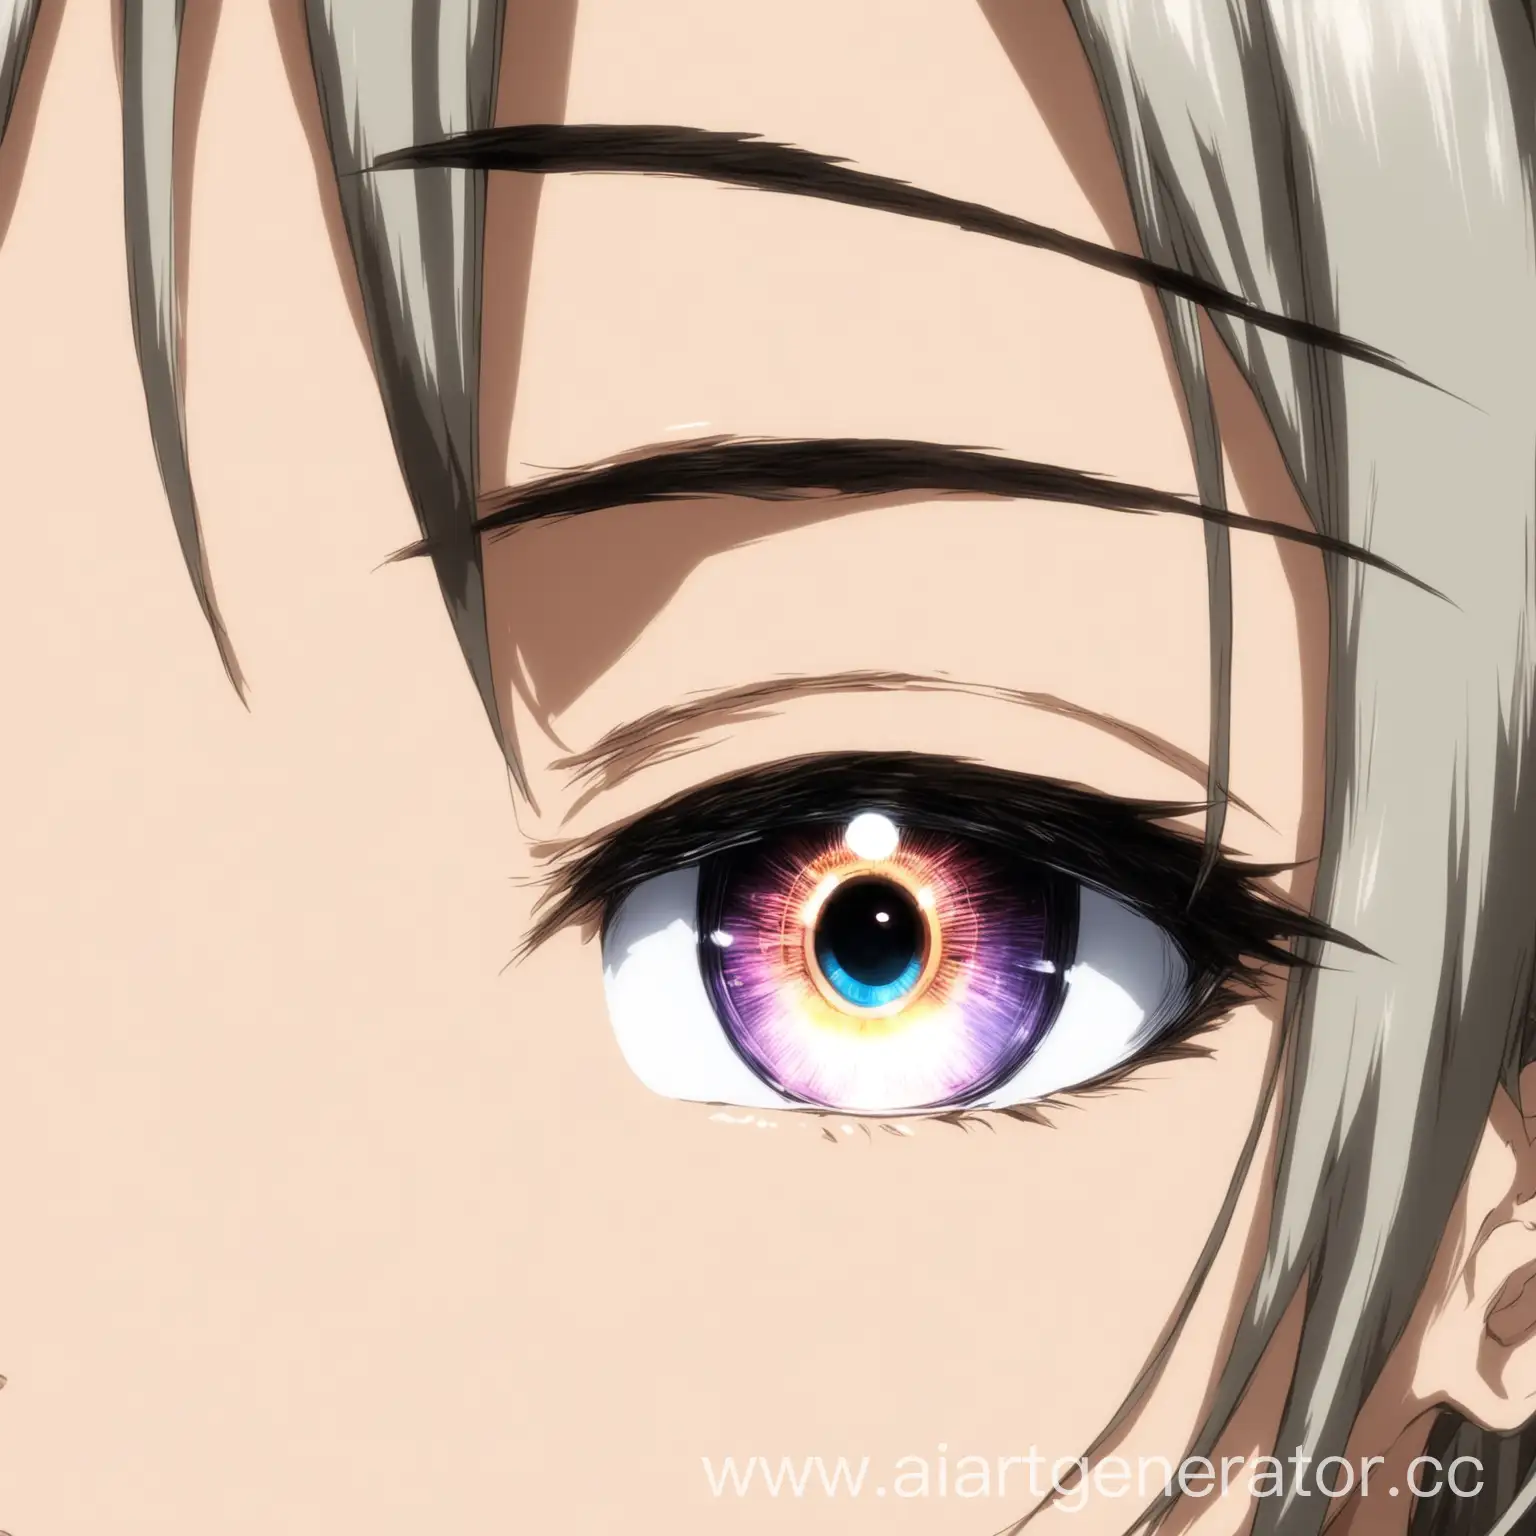 Anime-Eyes-Illustration-Detailed-Manga-Style-with-Large-Shiny-Pupils